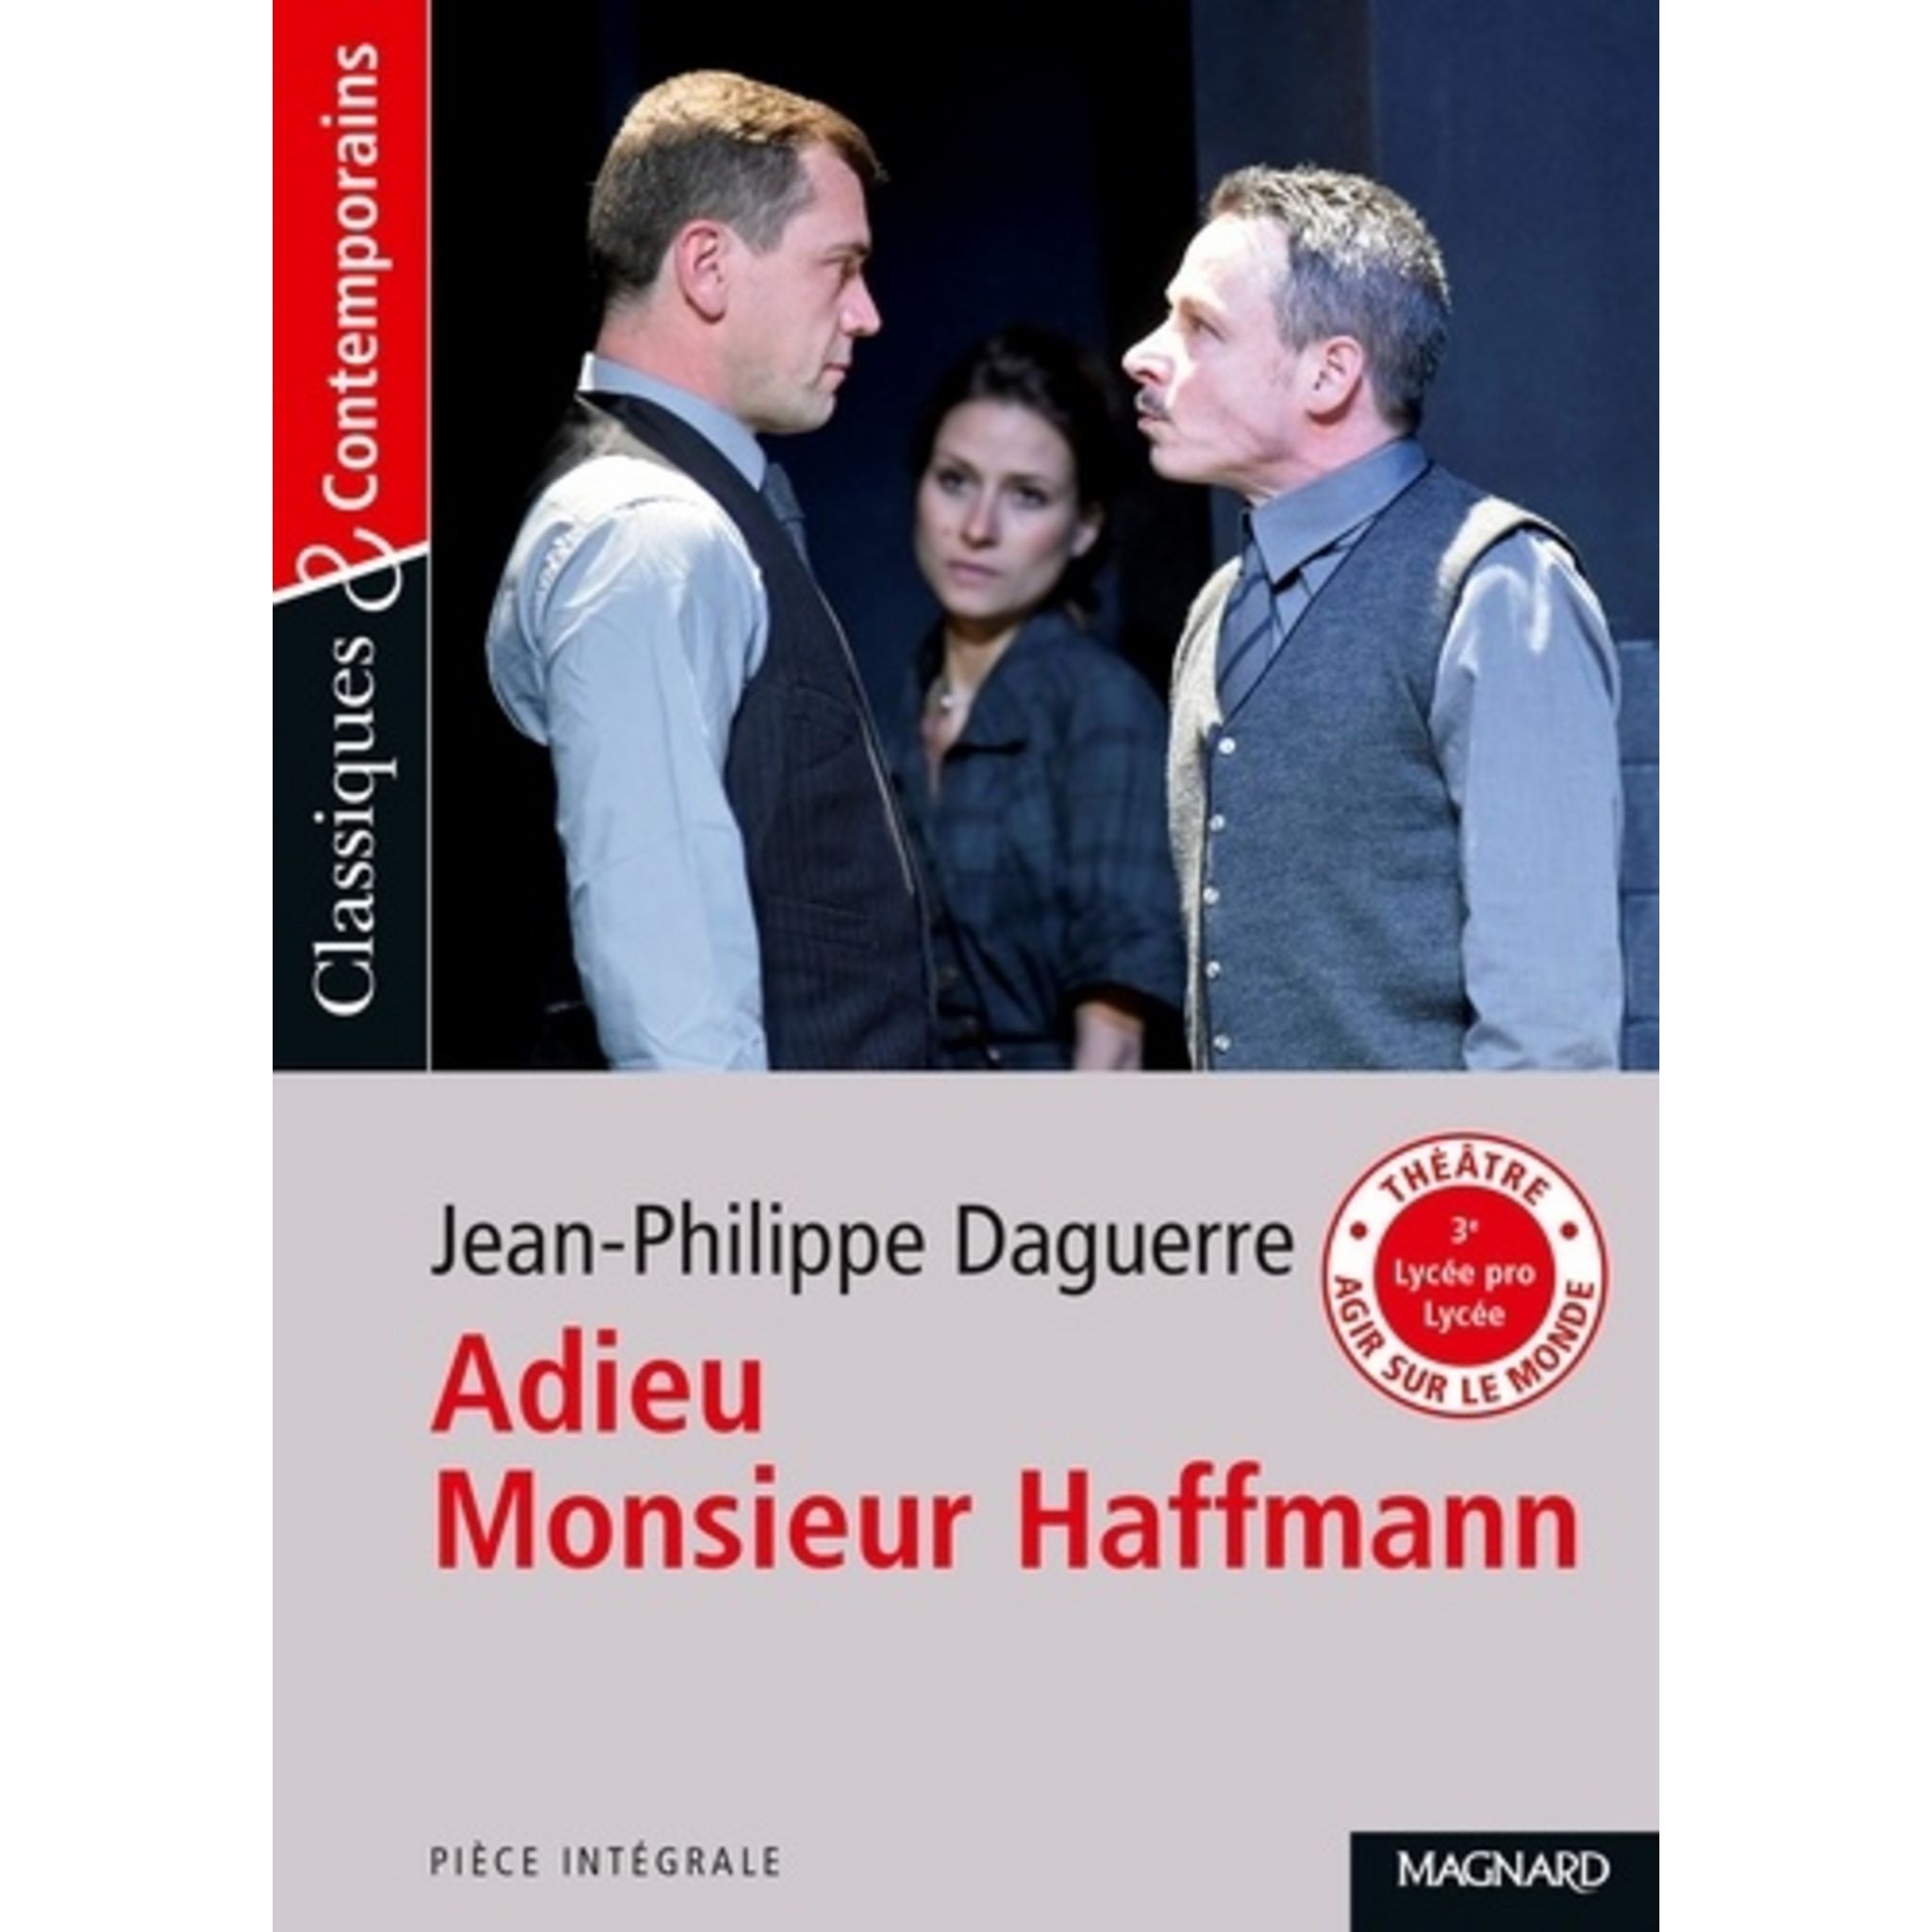 ADIEU MONSIEUR HAFFMANN, Daguerre Jean-Philippe pas cher 